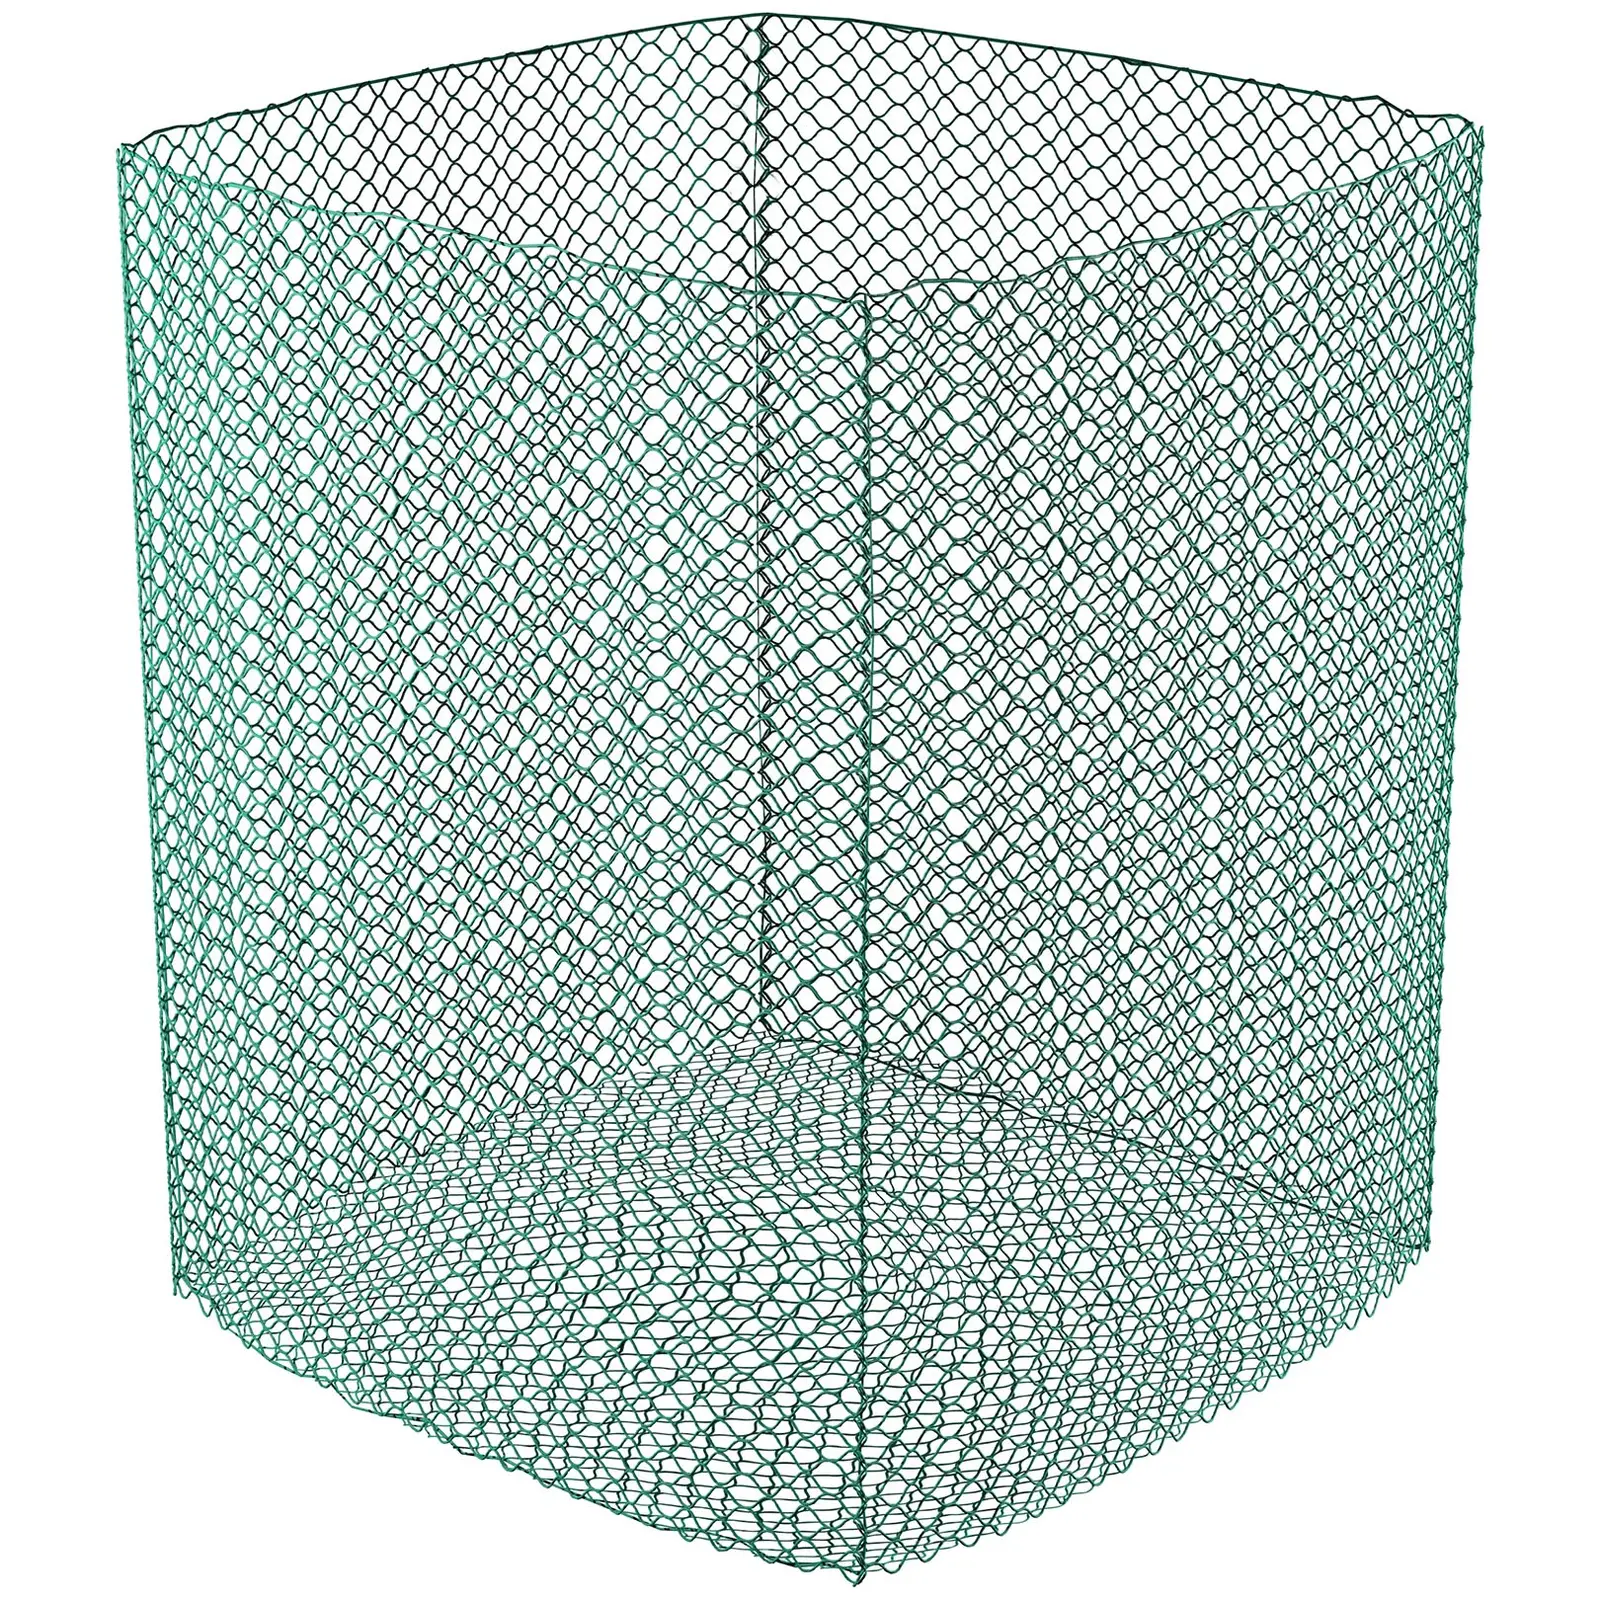 Mreža za okrugle bale - 1,4 x 1,4 x 1,6 m - fina mreža